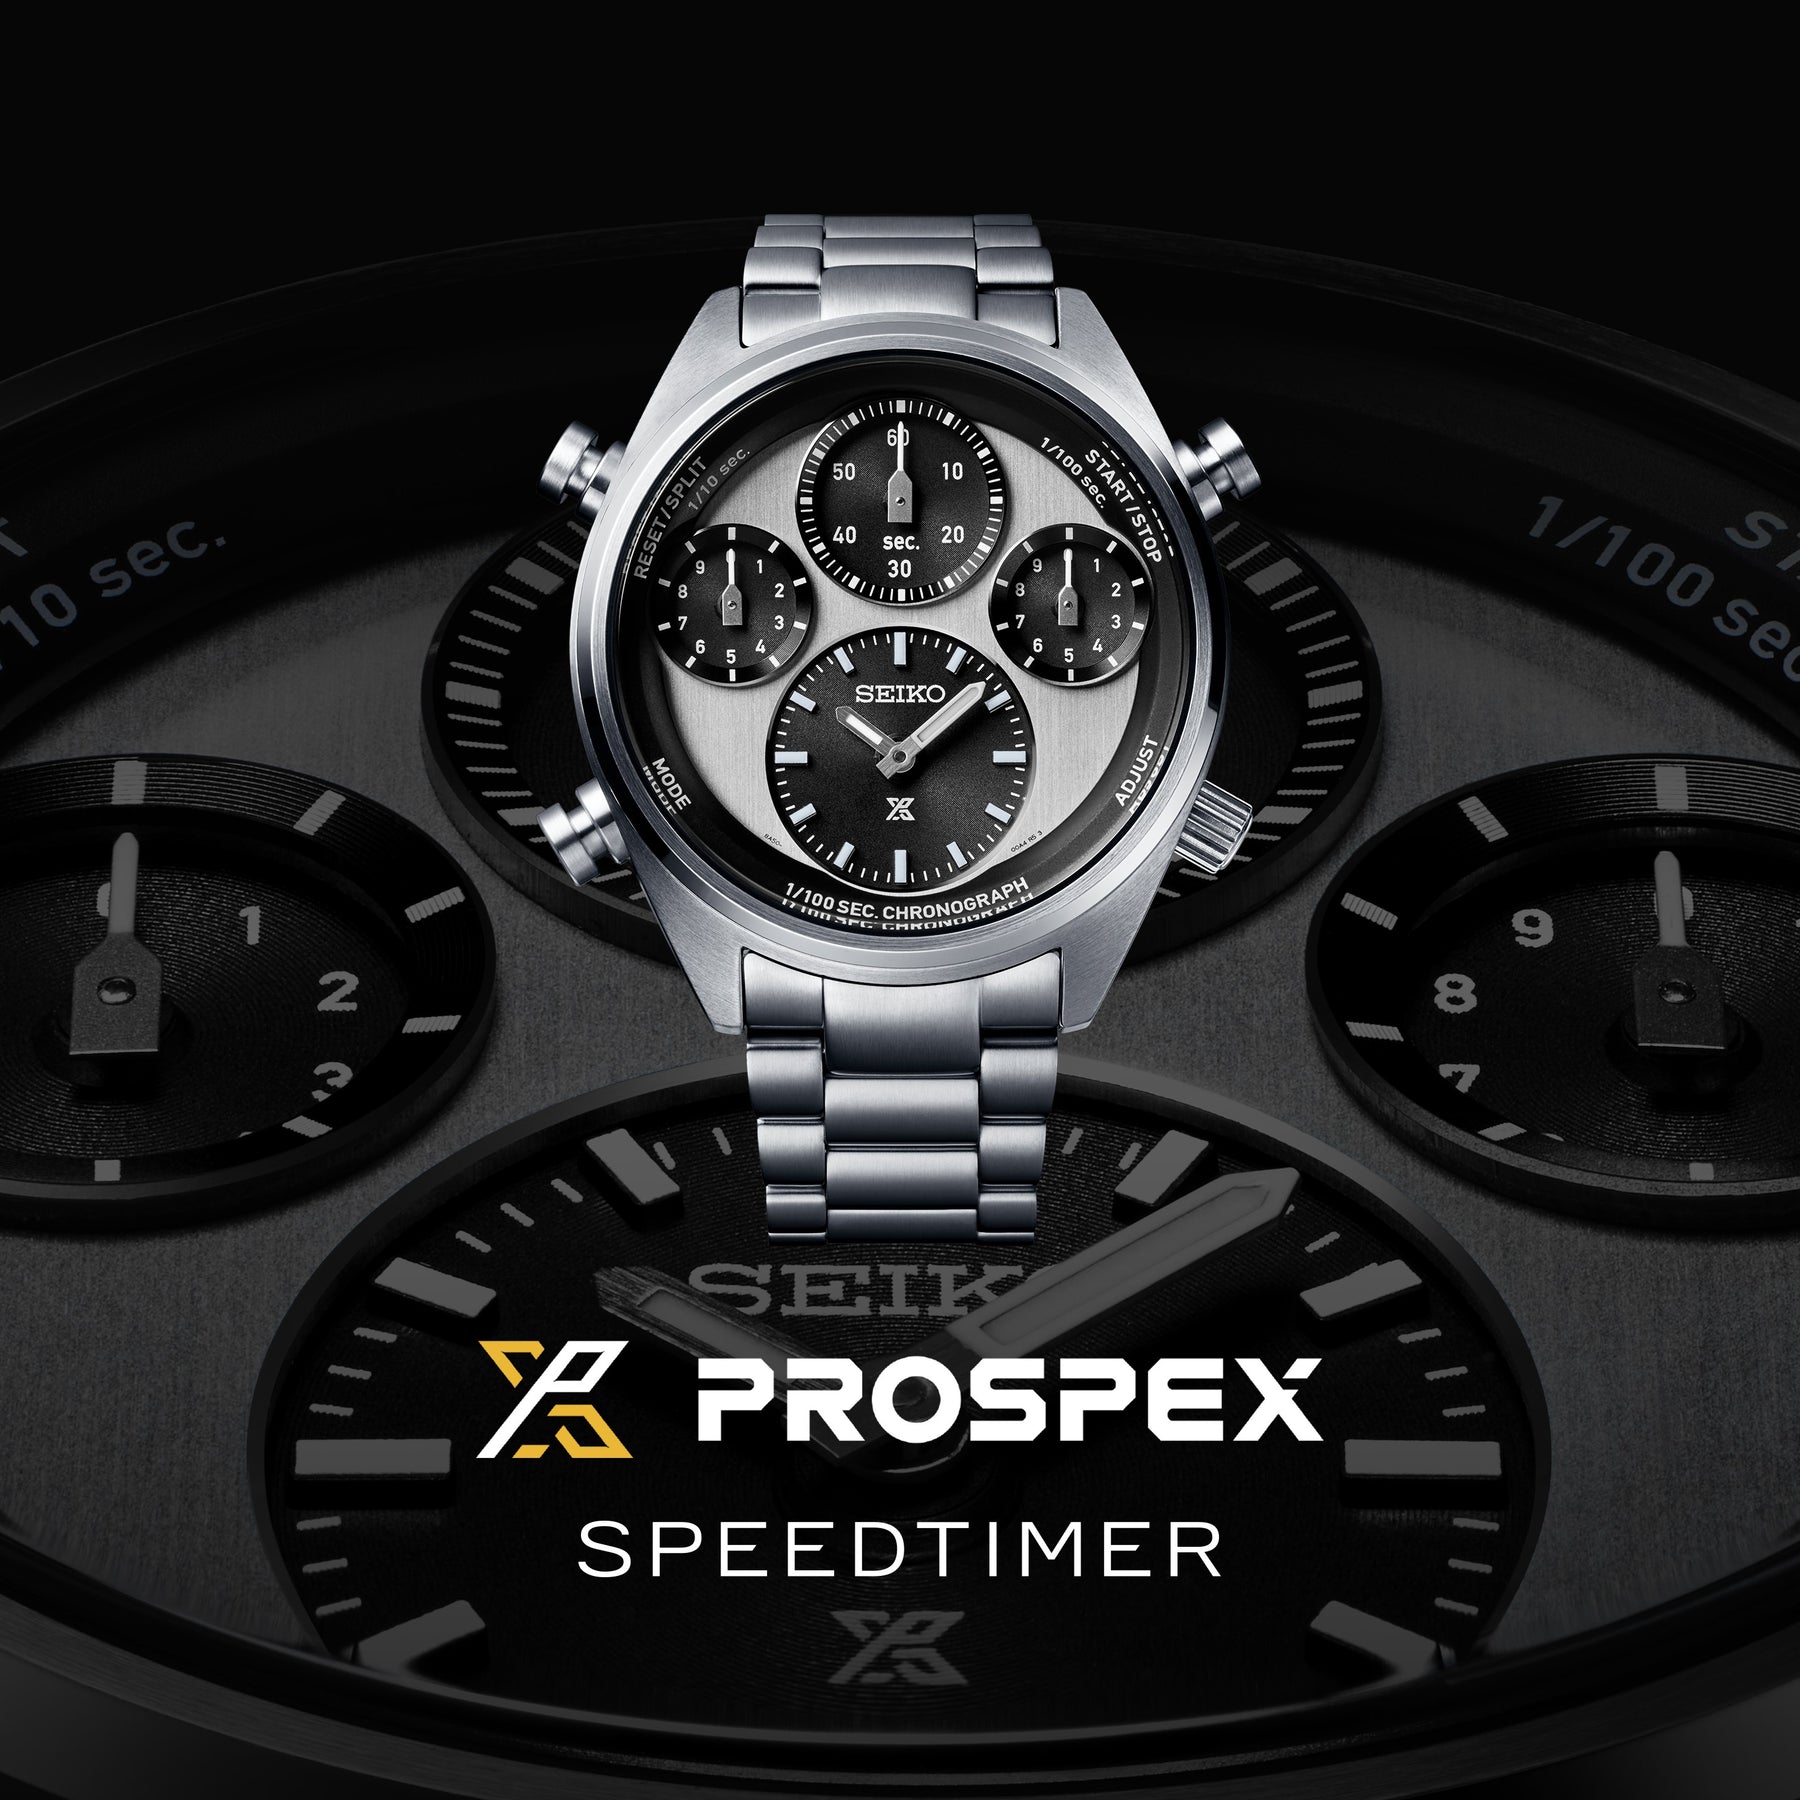 セイコー SEIKO PROSPEX 腕時計 メンズ SBER001 プロスペックス スピードタイマー ソーラー ホワイト/ブラックxシルバー アナログ表示